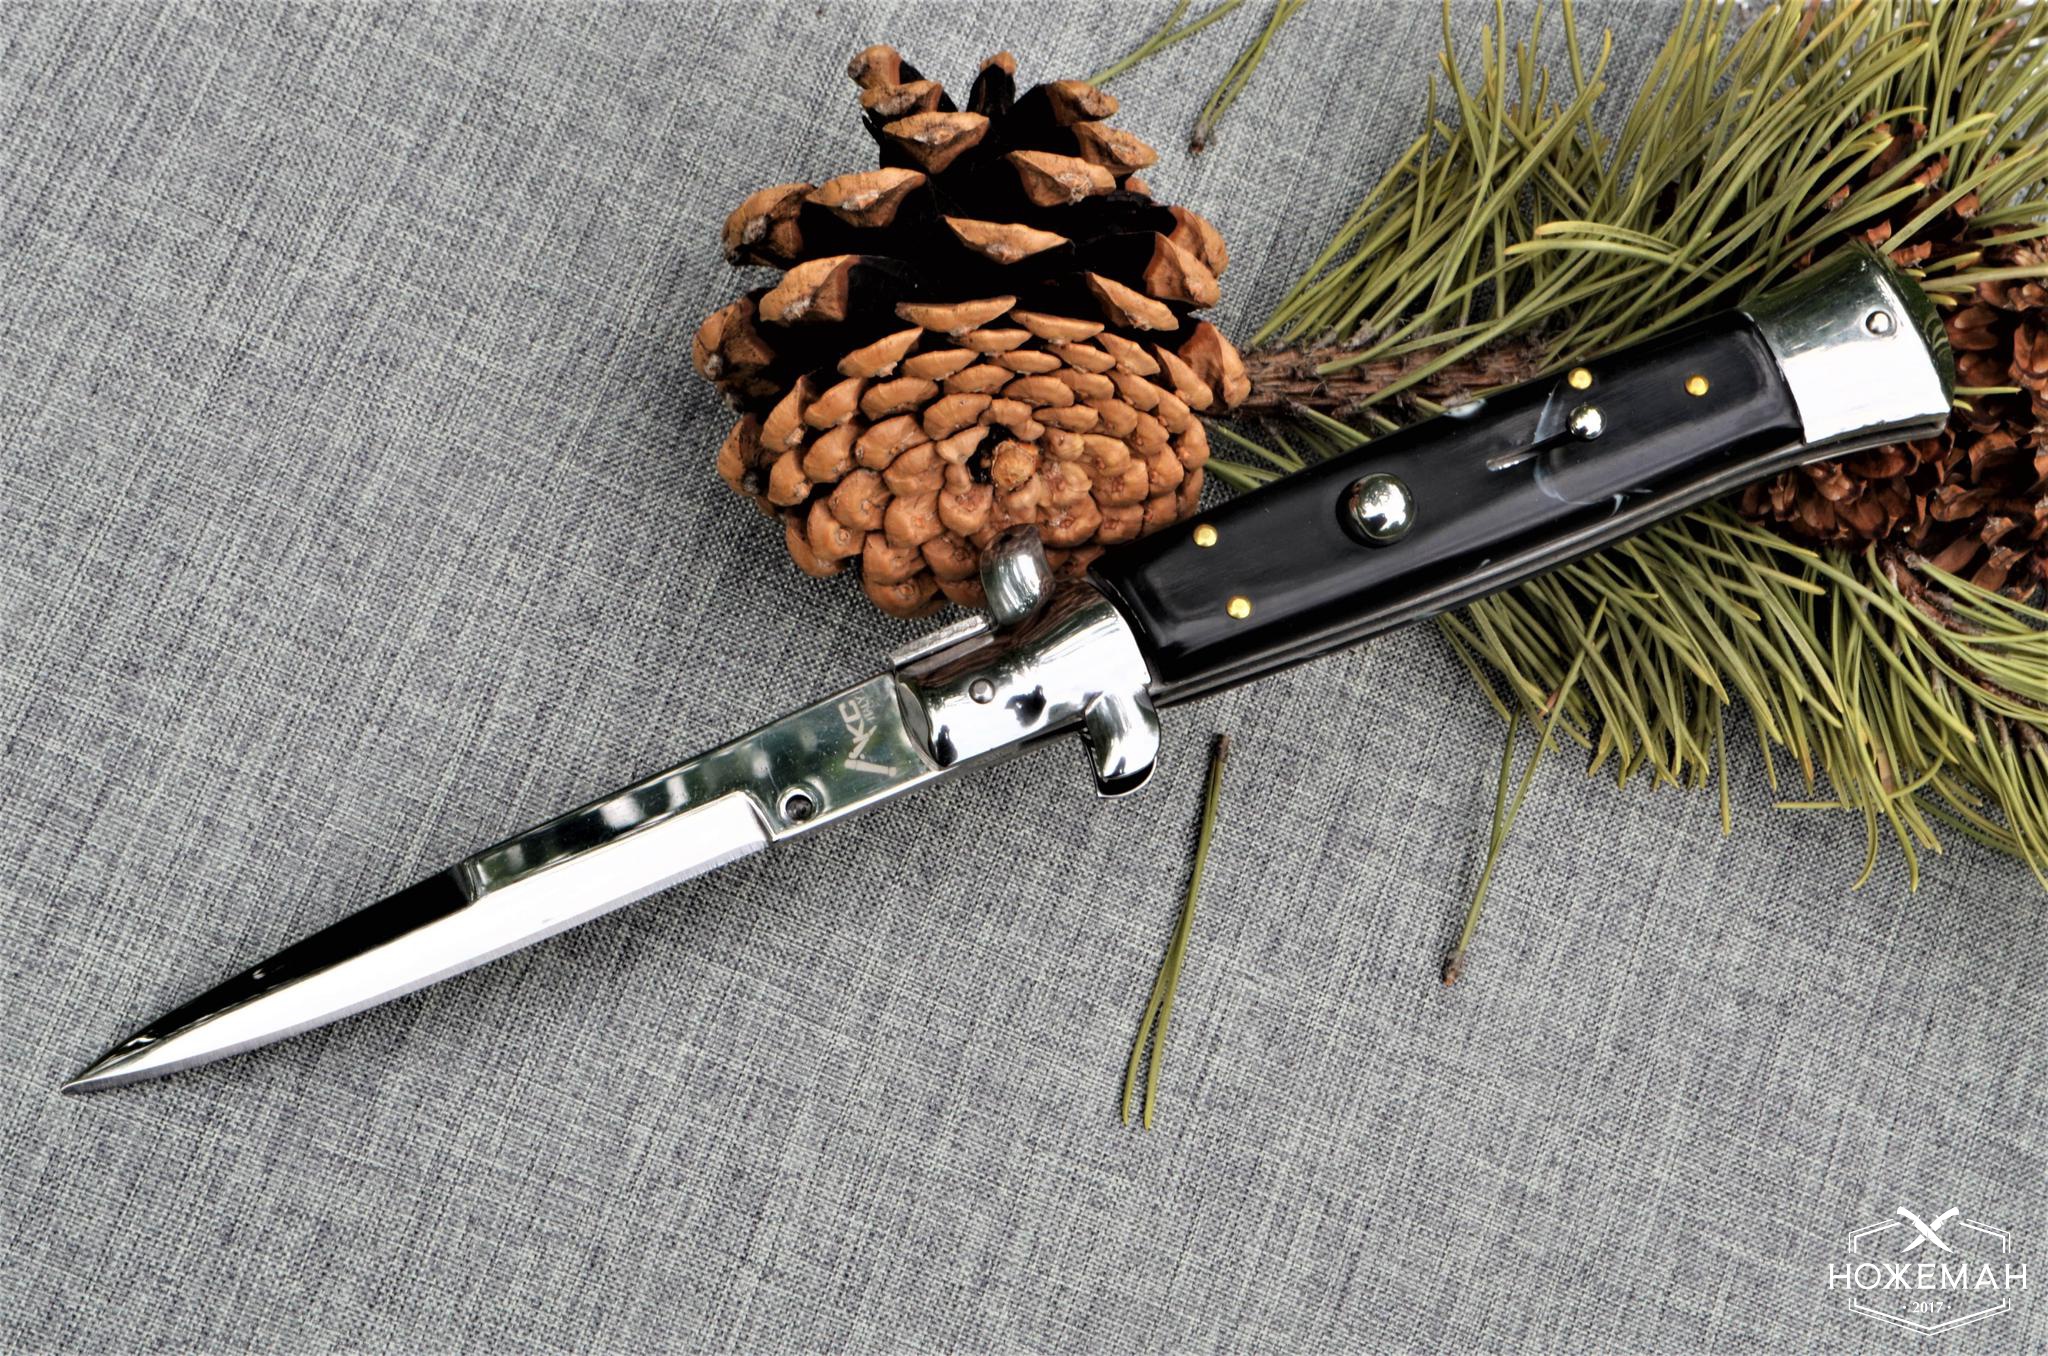 Нож стилет AKC 10-inch -  реплику в : Nozheman